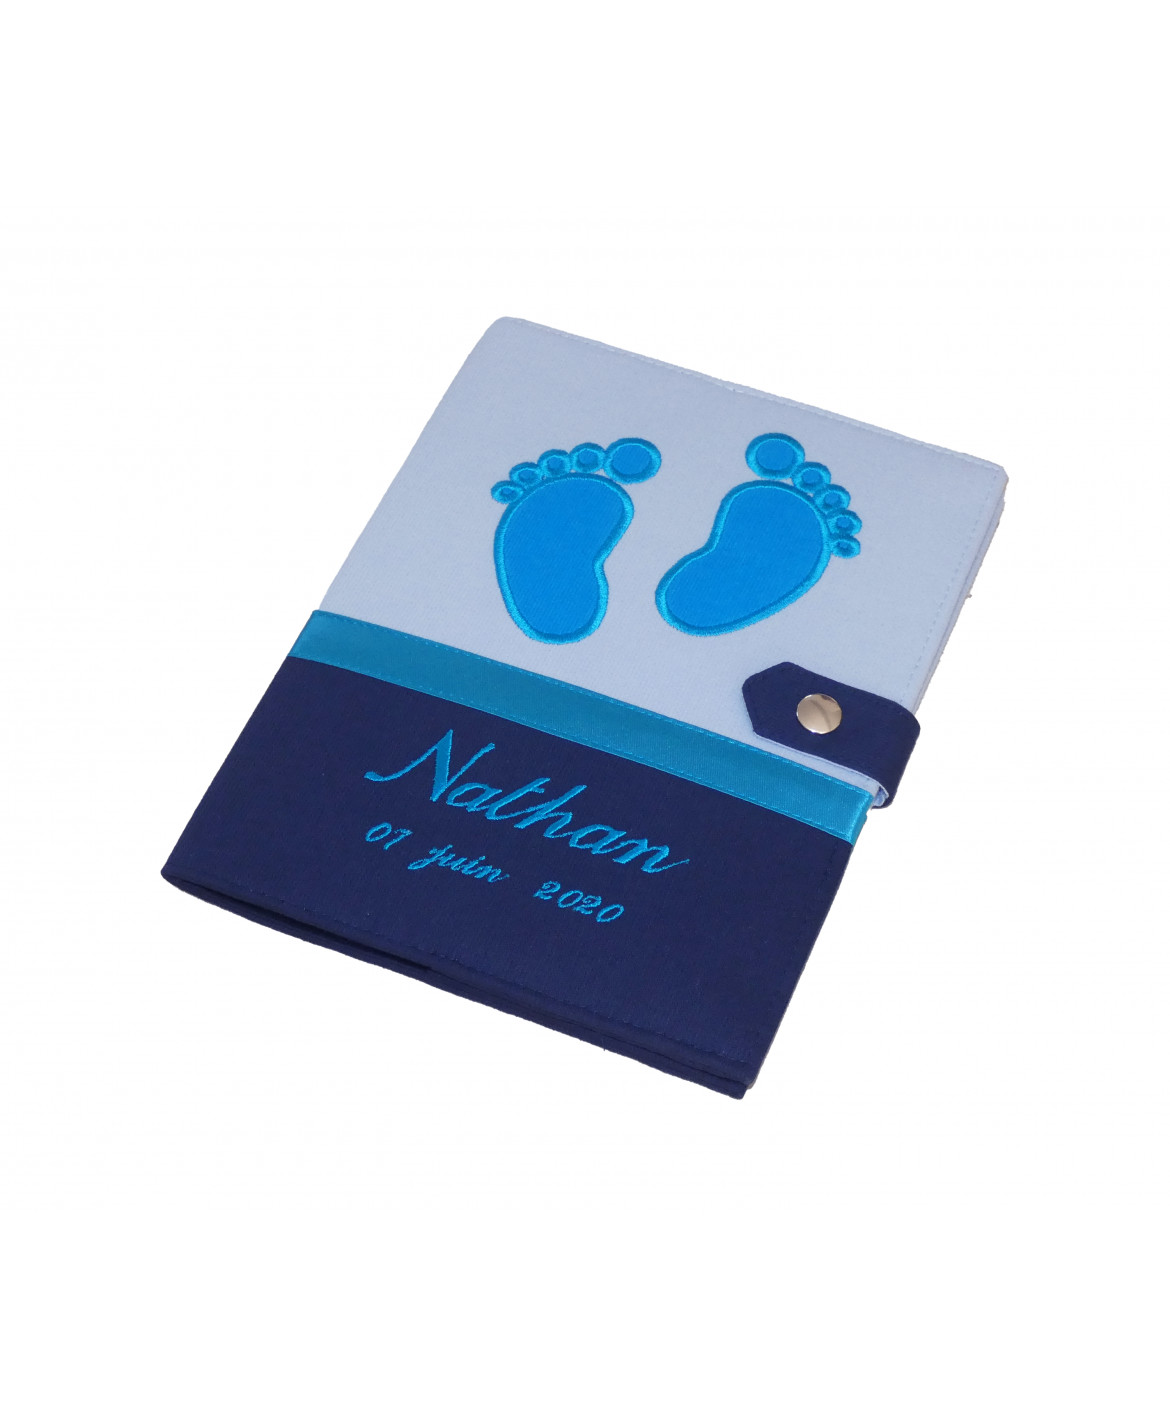 Protège carnet de santé garçon personnalisé rigide - baby feet - bleu - turquoise - cadeau de naissance personnalisé